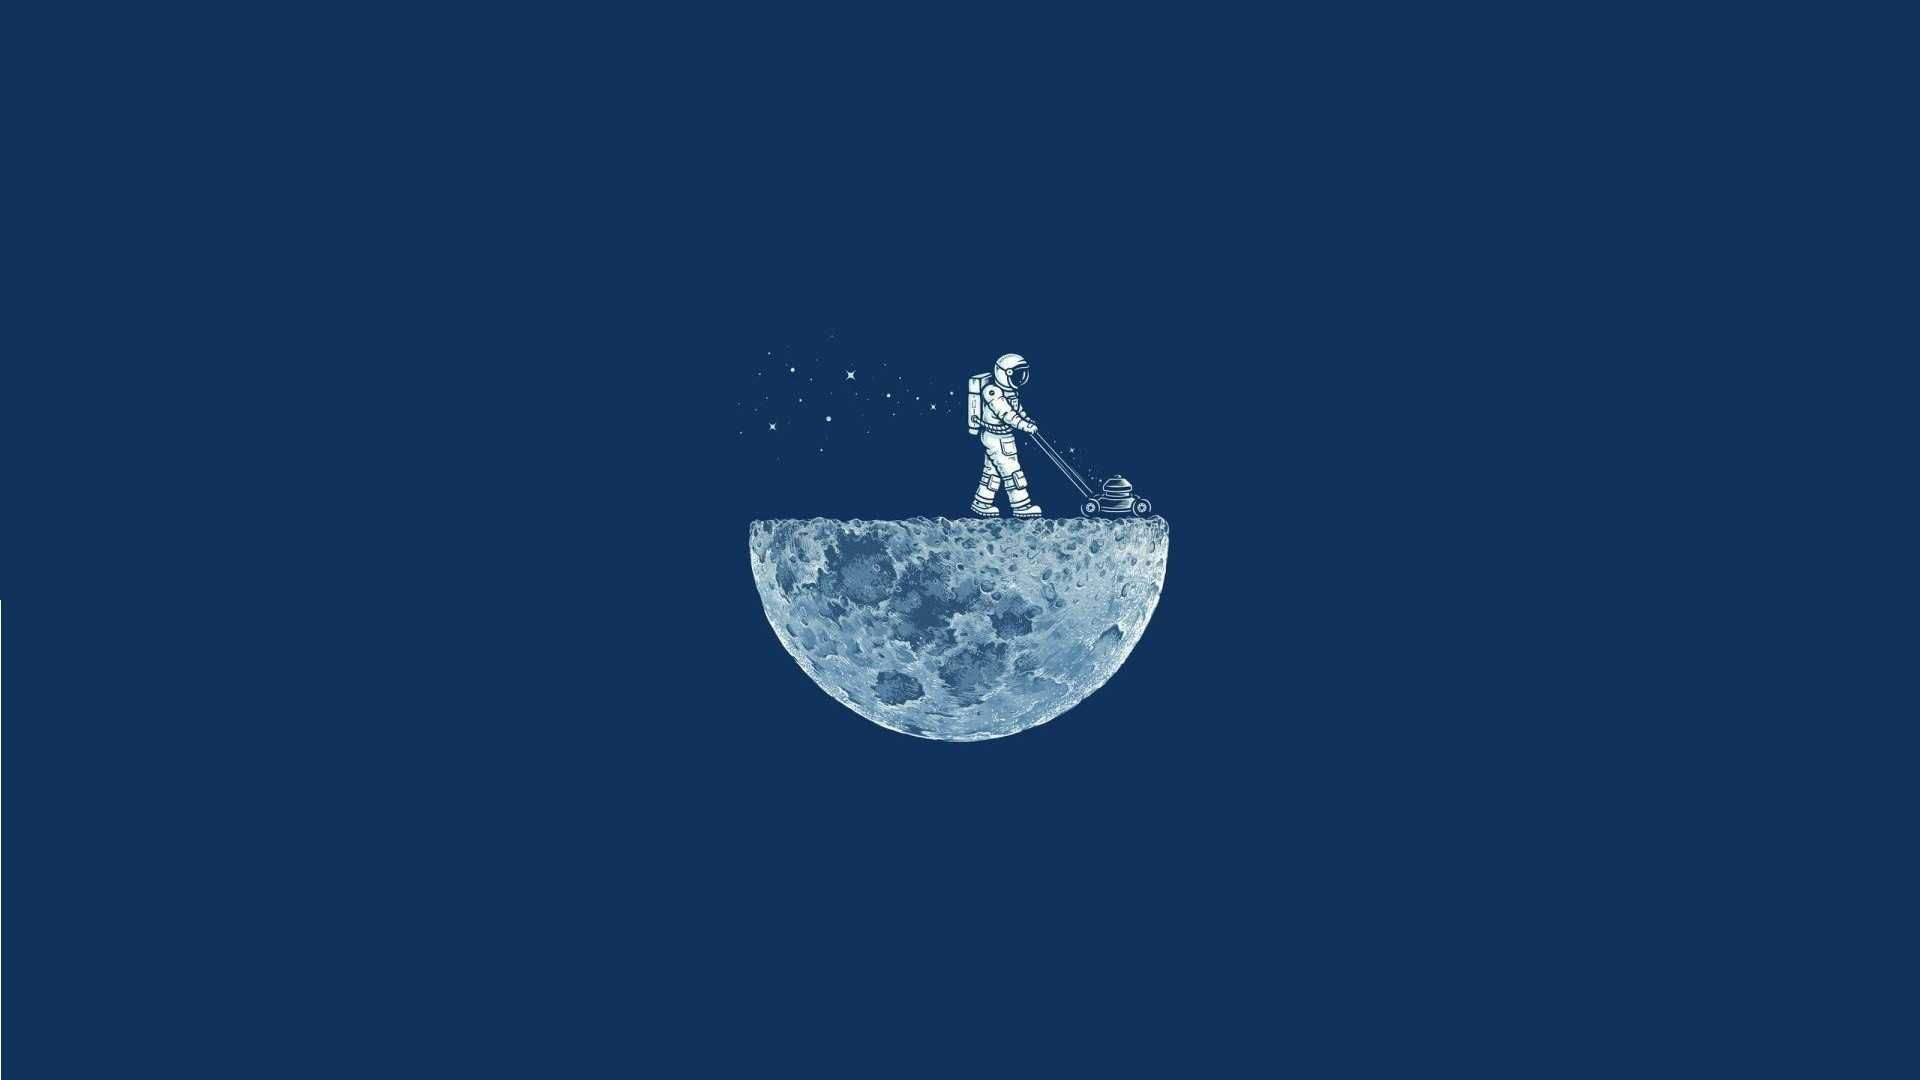 Moon Lawn Mowing Astronaut - HD Wallpaper 